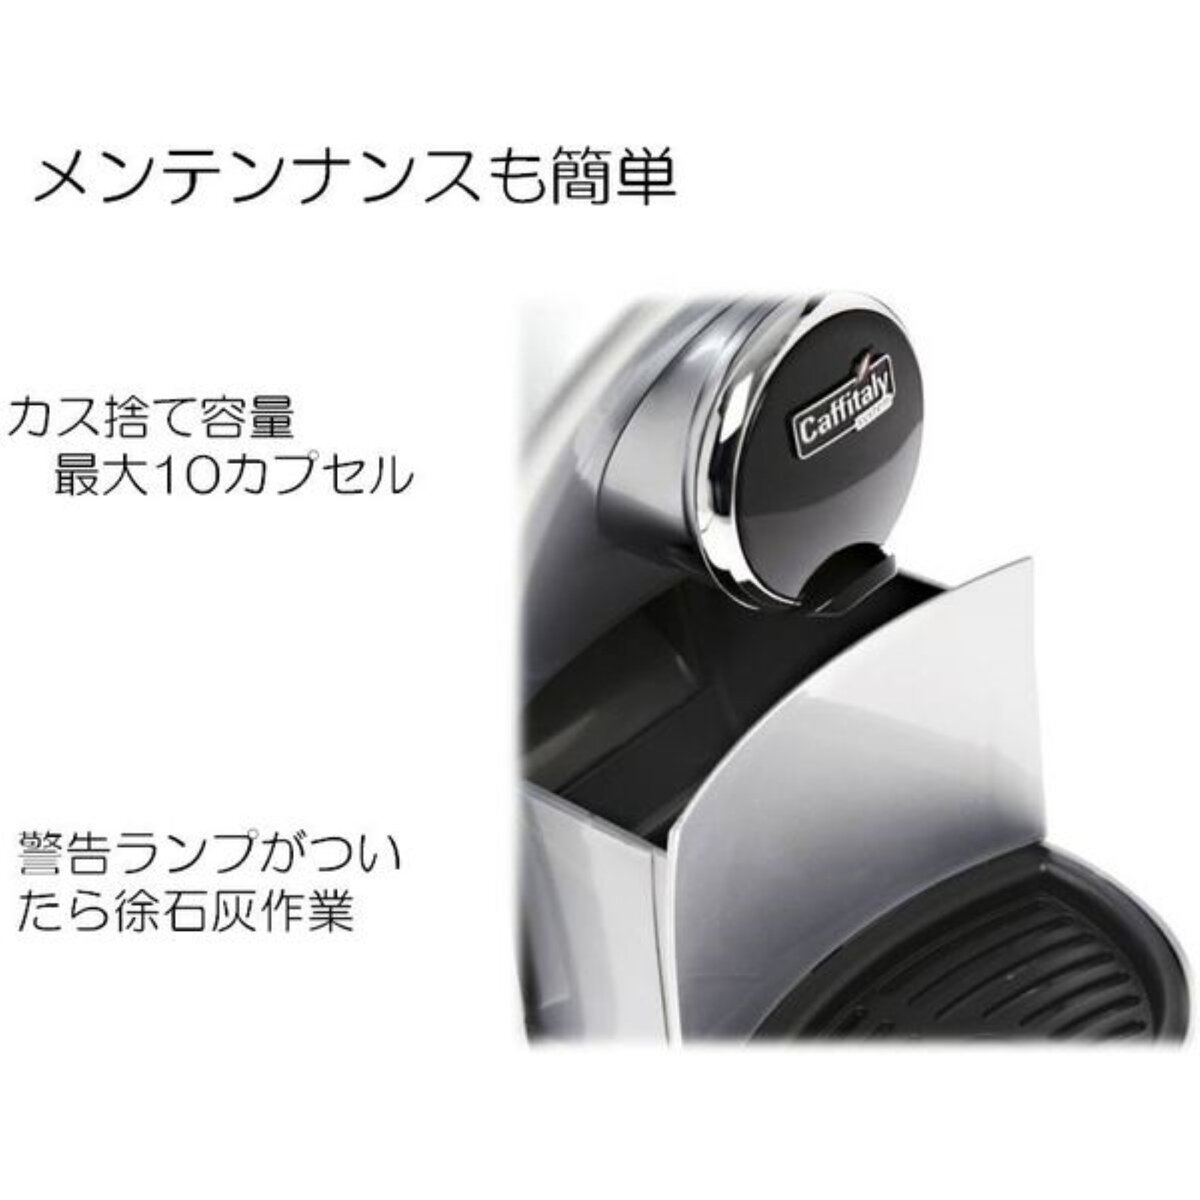 カフィタリーシステム カプセル式コーヒーマシン S-12 | Costco Japan